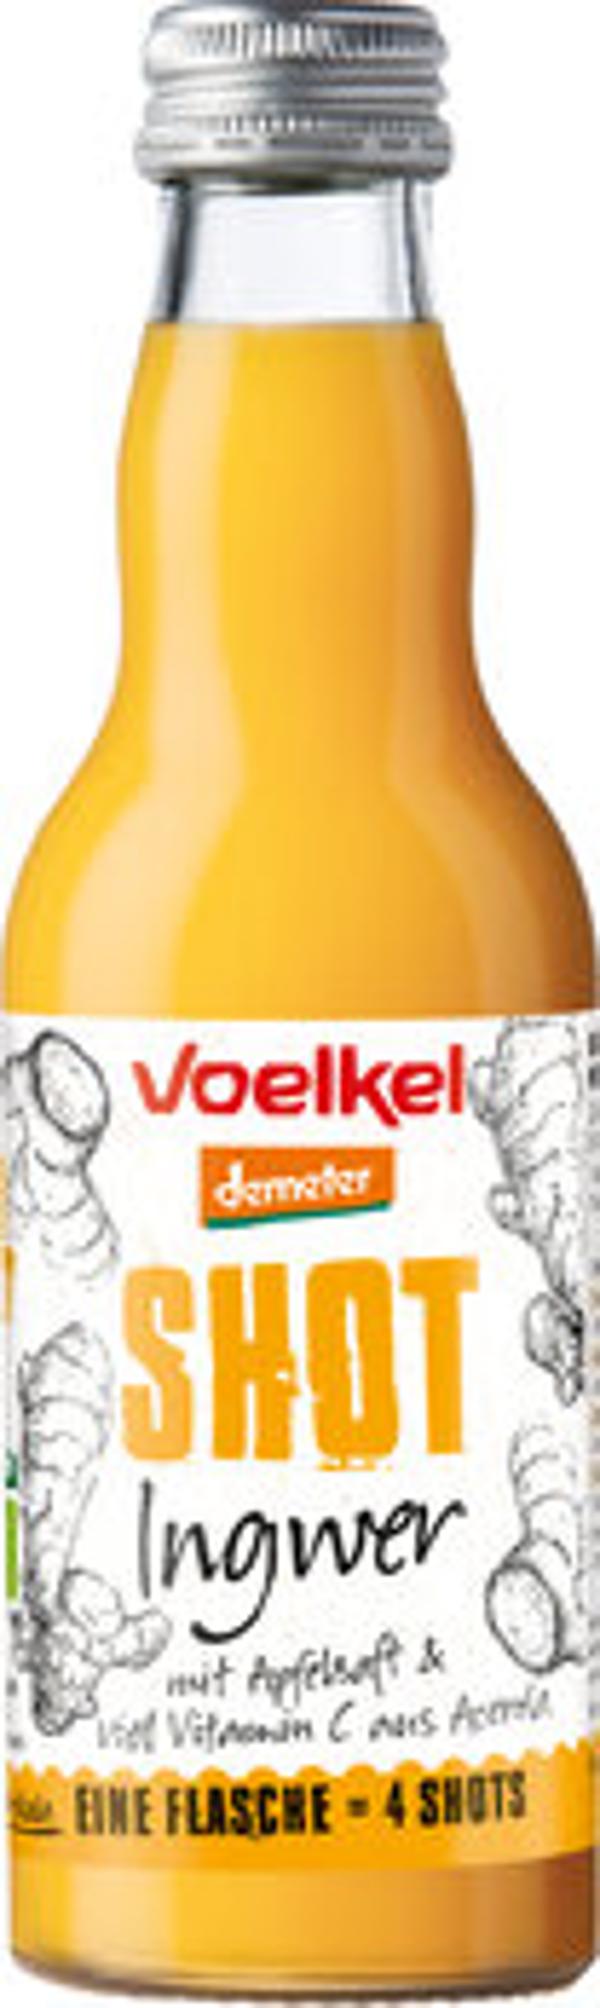 Produktfoto zu Voelkel Shot Ingwer Mehrweg 0,2l